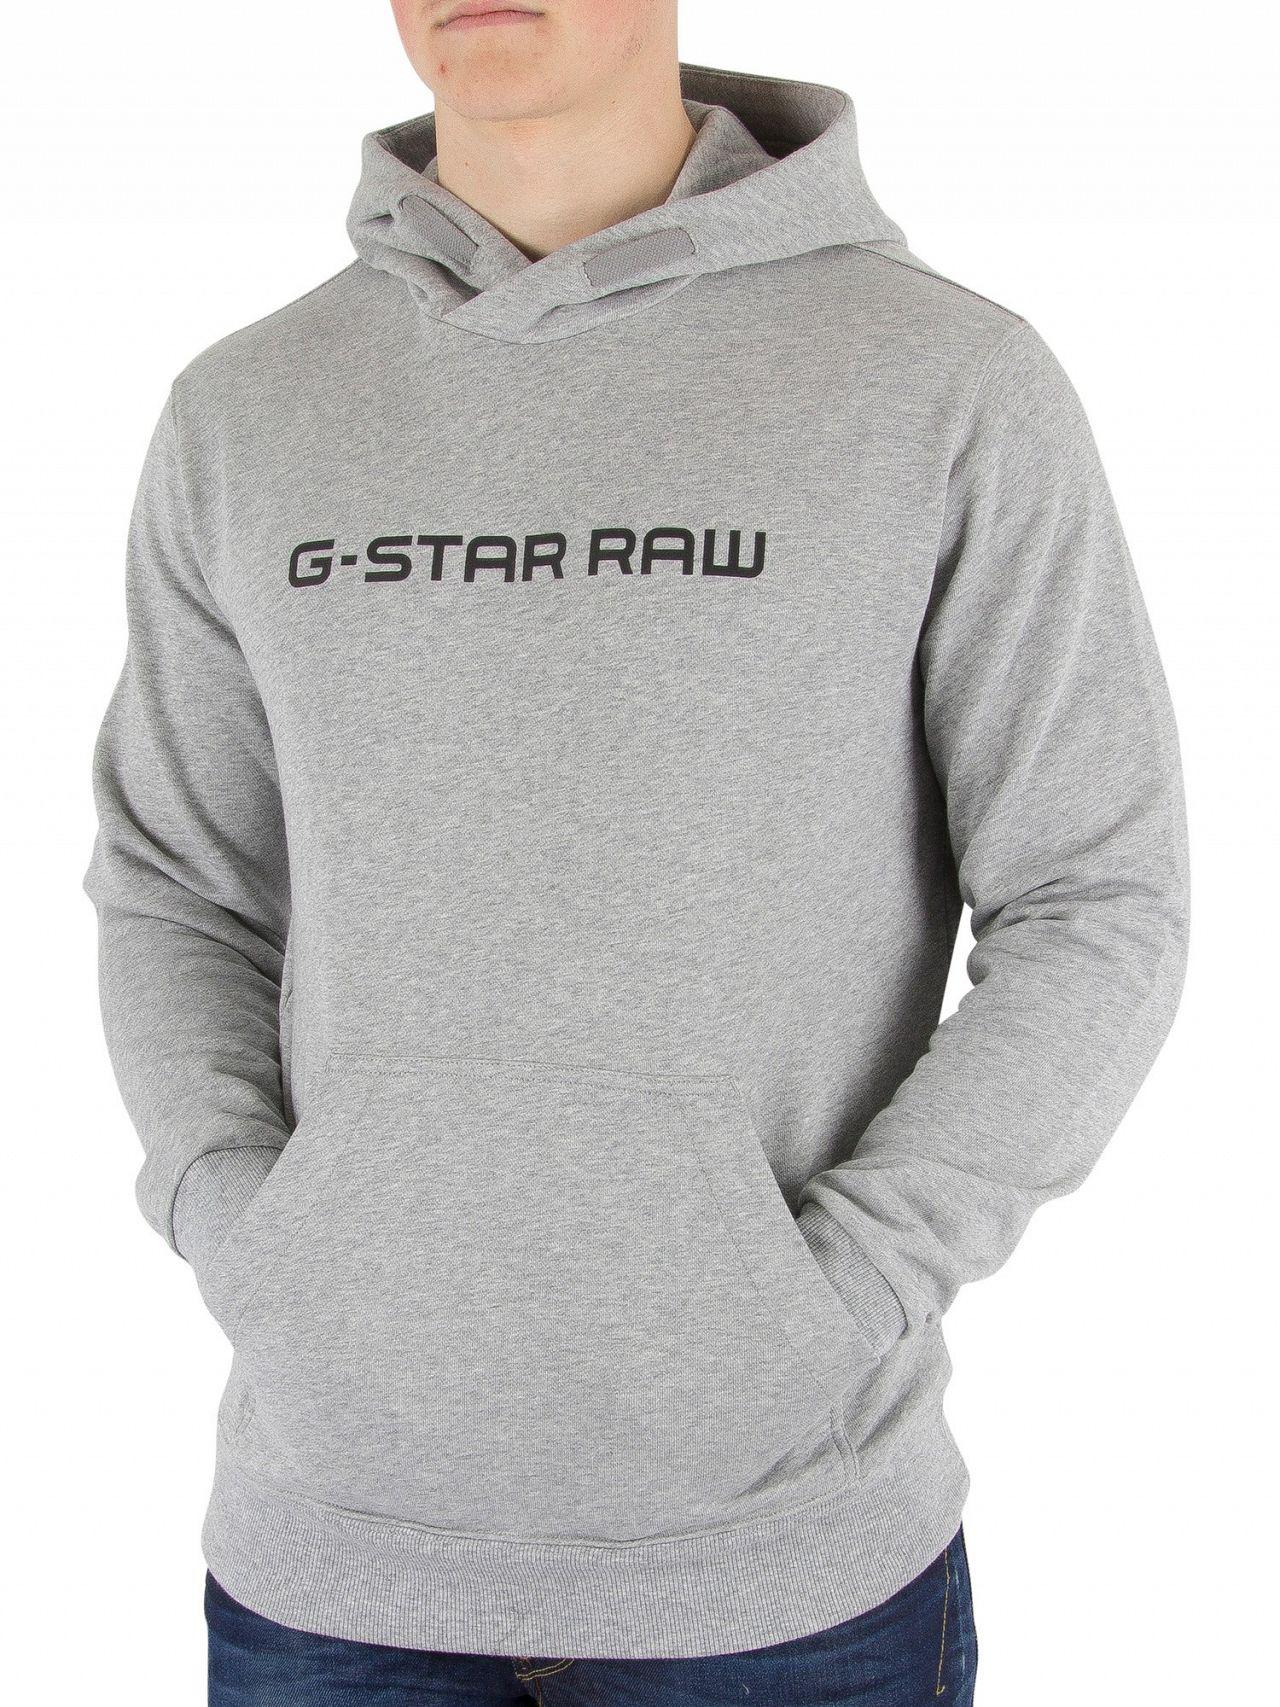 G Star Raw Hoodie Discount, 56% OFF | www.ingeniovirtual.com